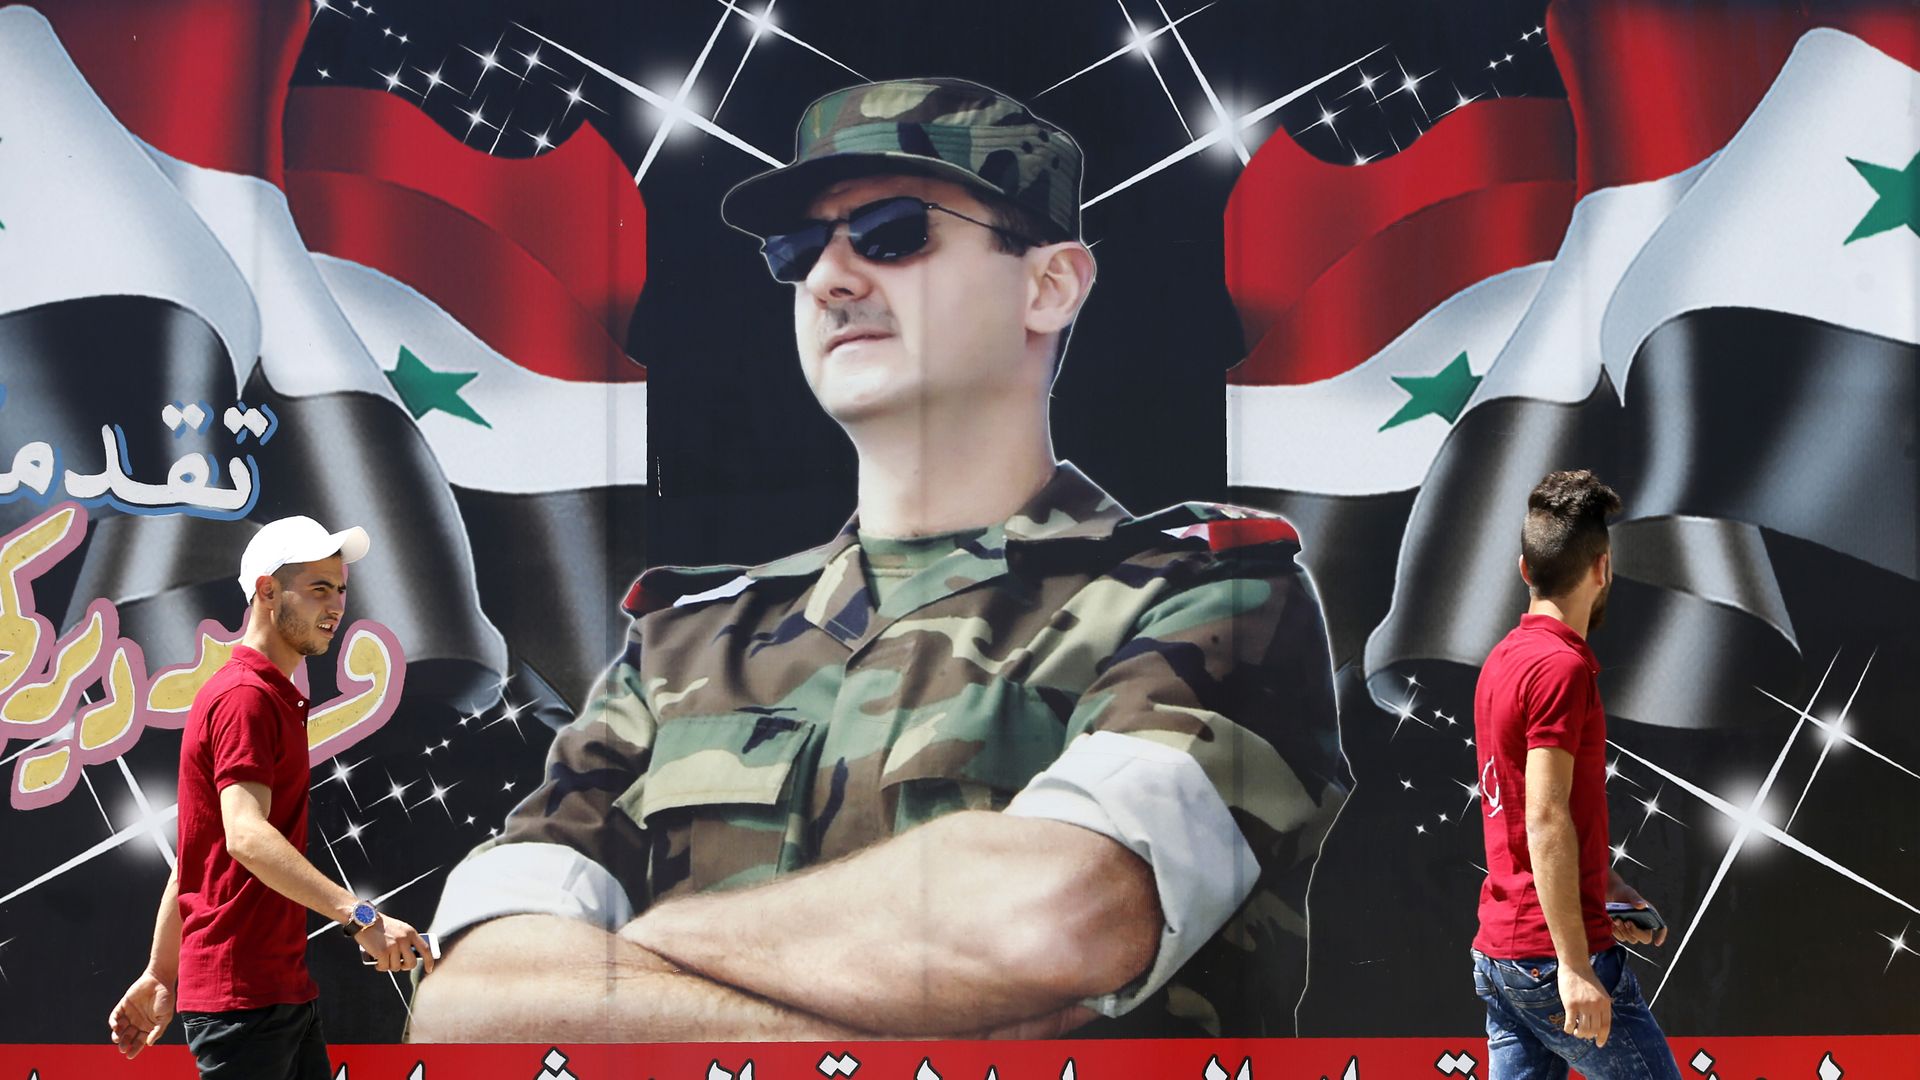 Poster of Assad